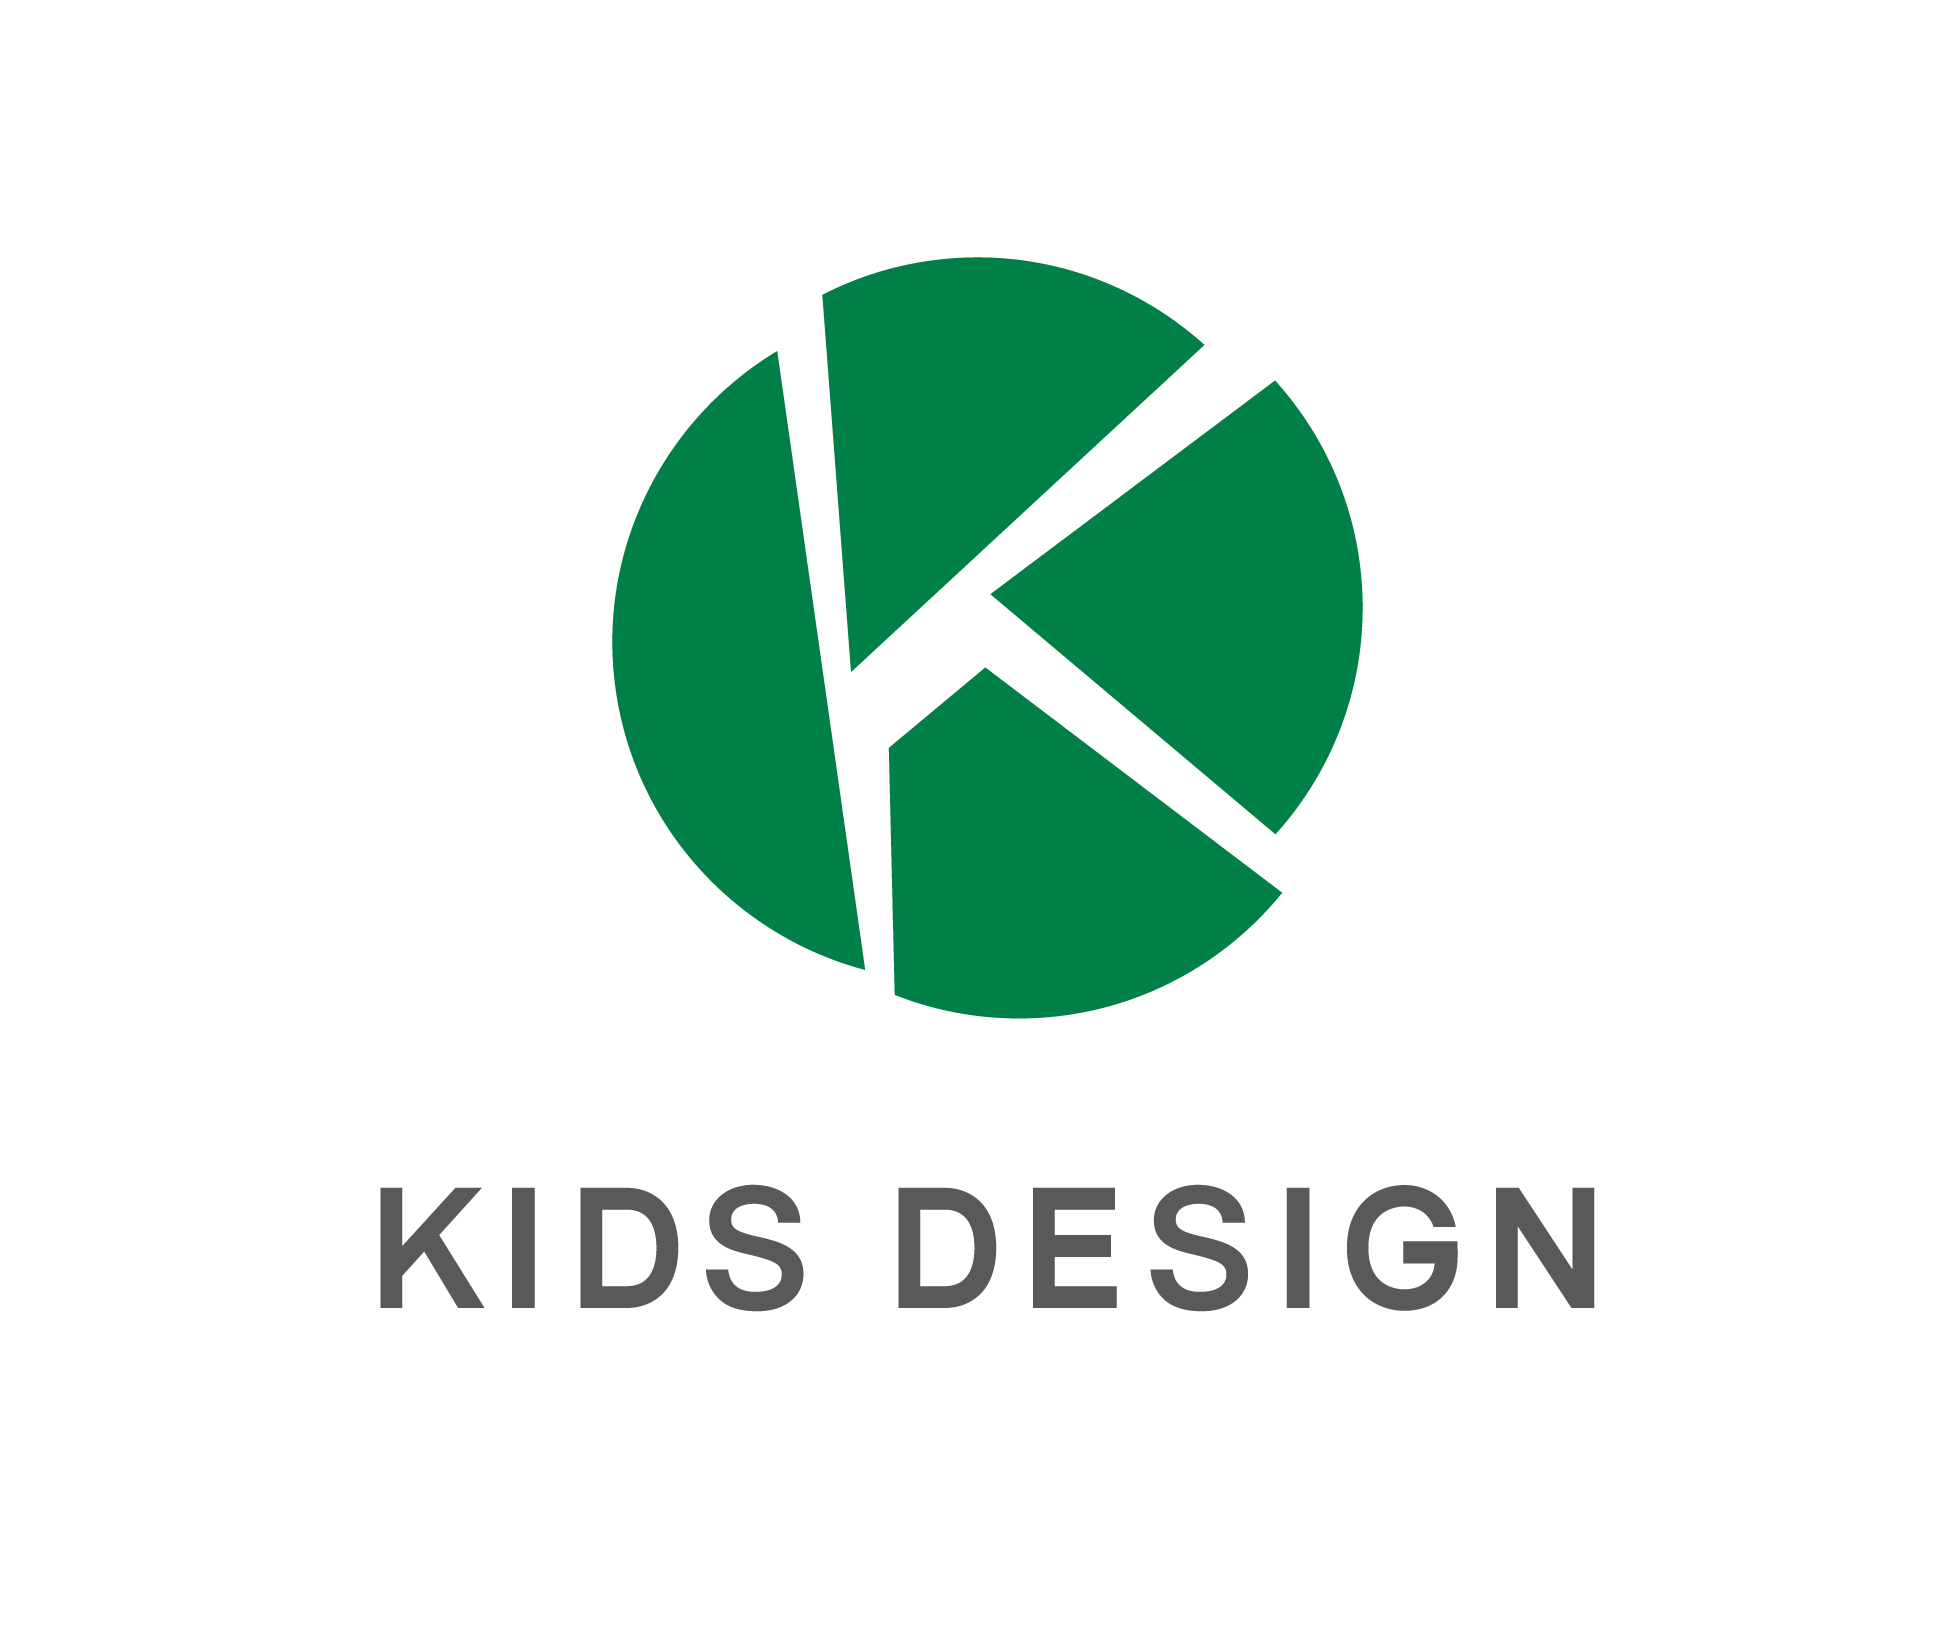 オンライン初開催 キッズデザインアカデミーアイデアソン 参加学生募集 特定非営利活動法人 キッズデザイン協議会のプレスリリース